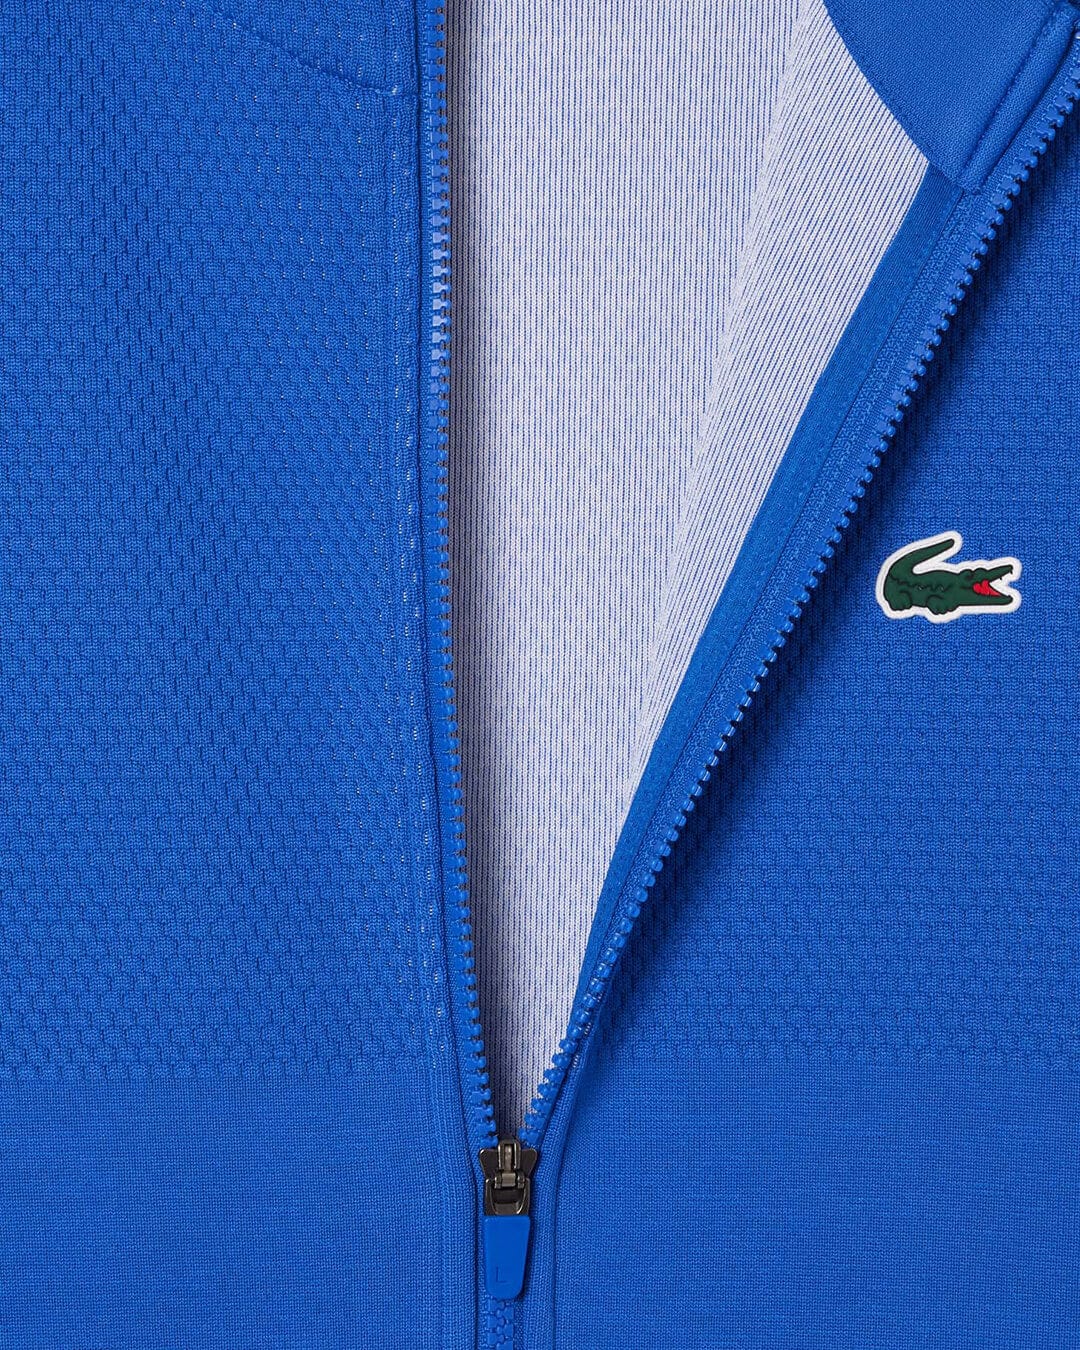 Lacoste Jumpers Lacoste Blue Tennis x Novak Djokovic Sportsuit Jacket